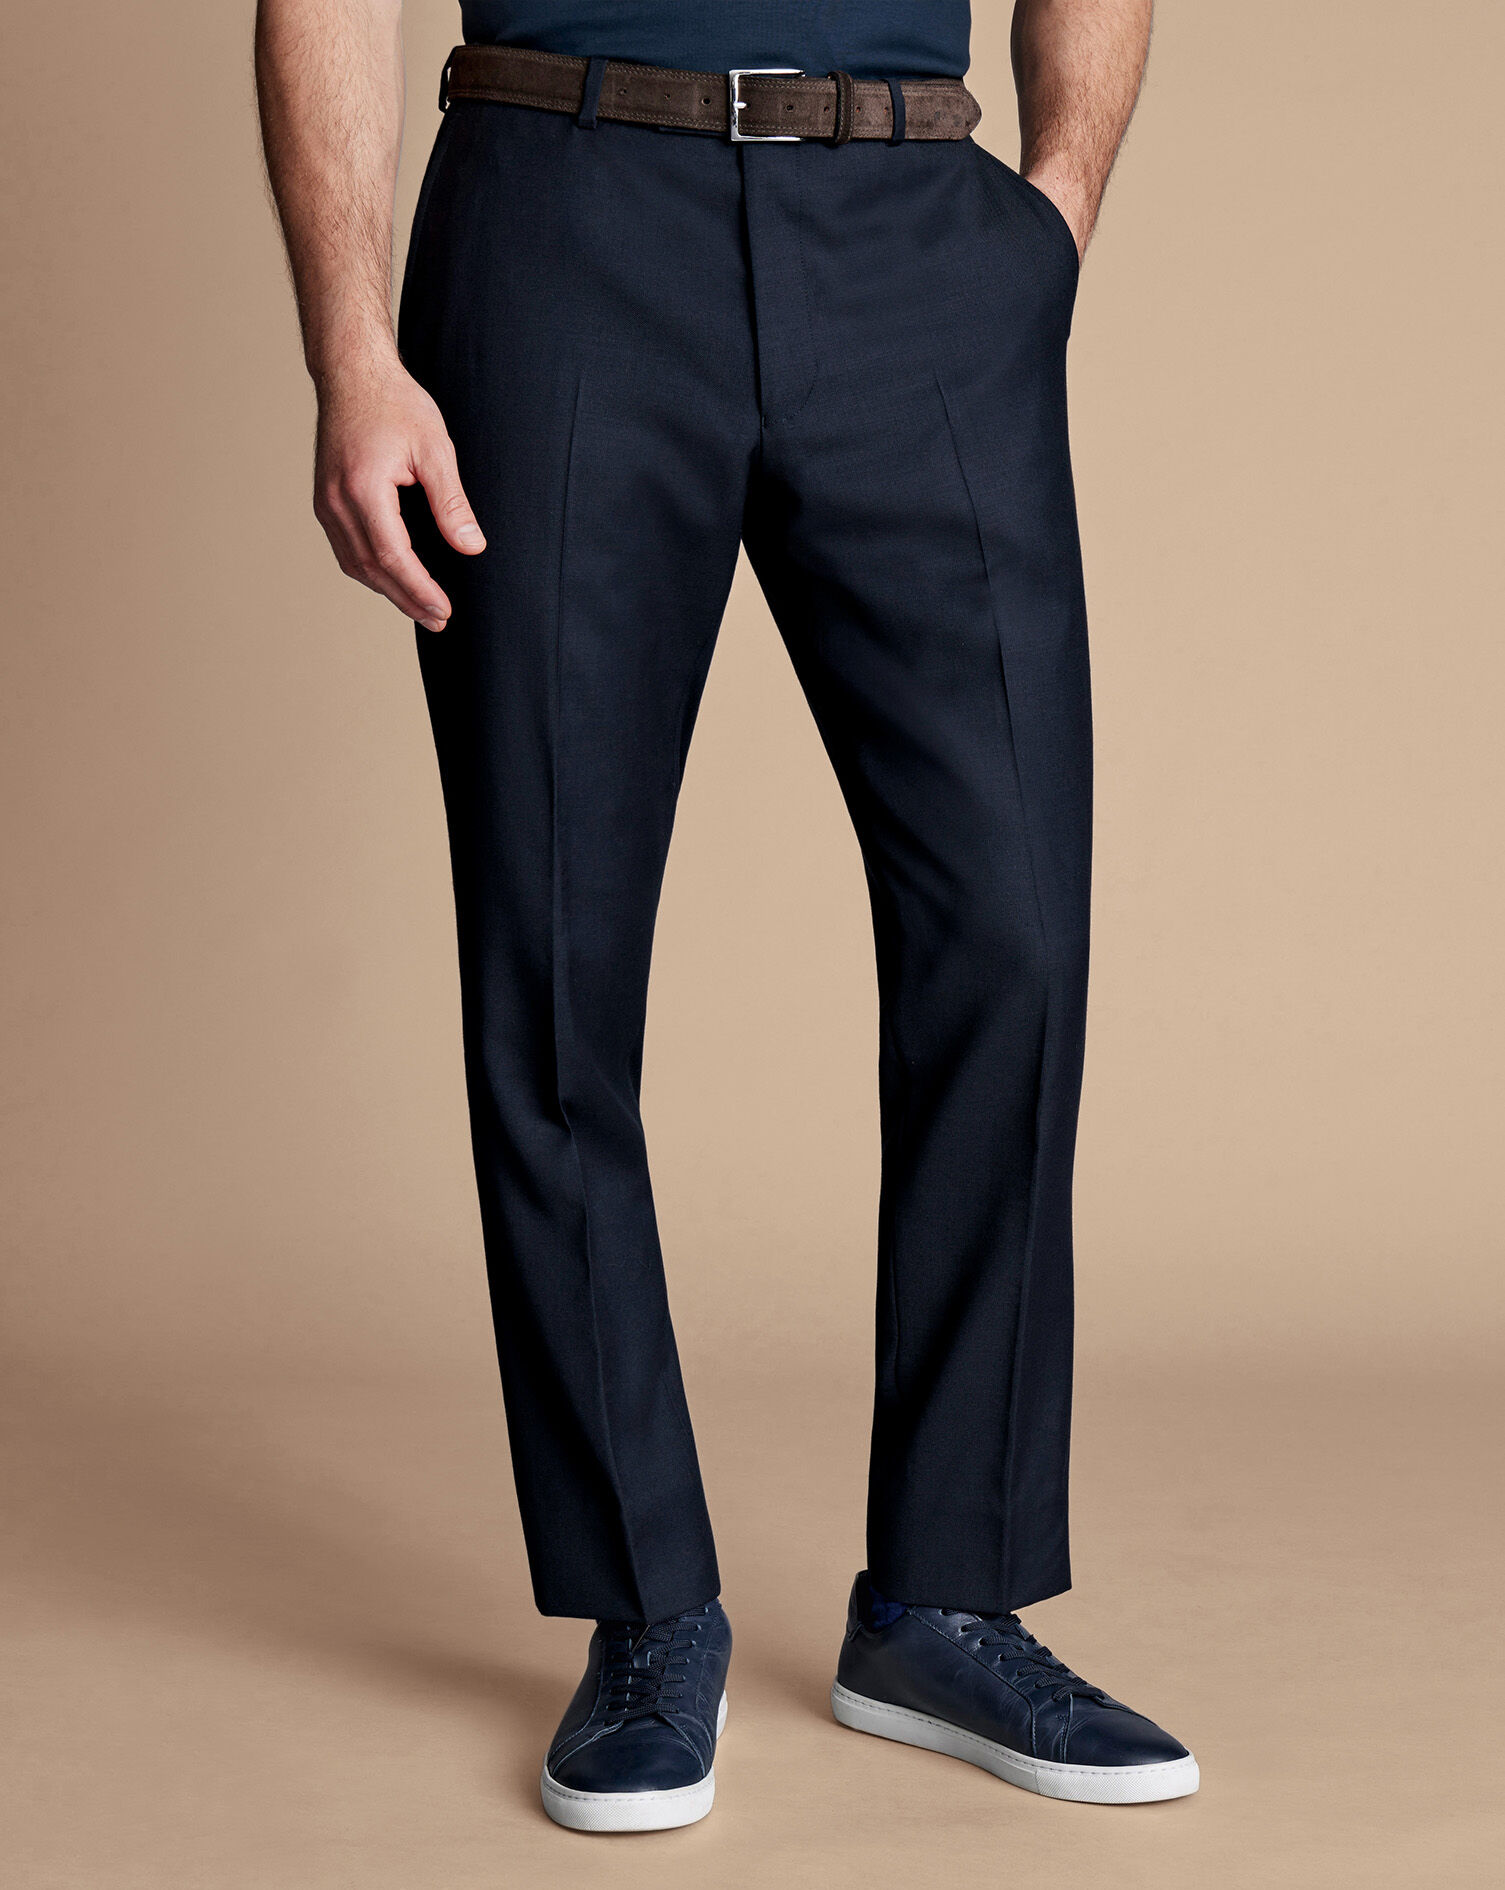 John Lewis Birdseye 100% Wool Navy Suit Trousers - Multiple Sizes RRP £69 |  eBay